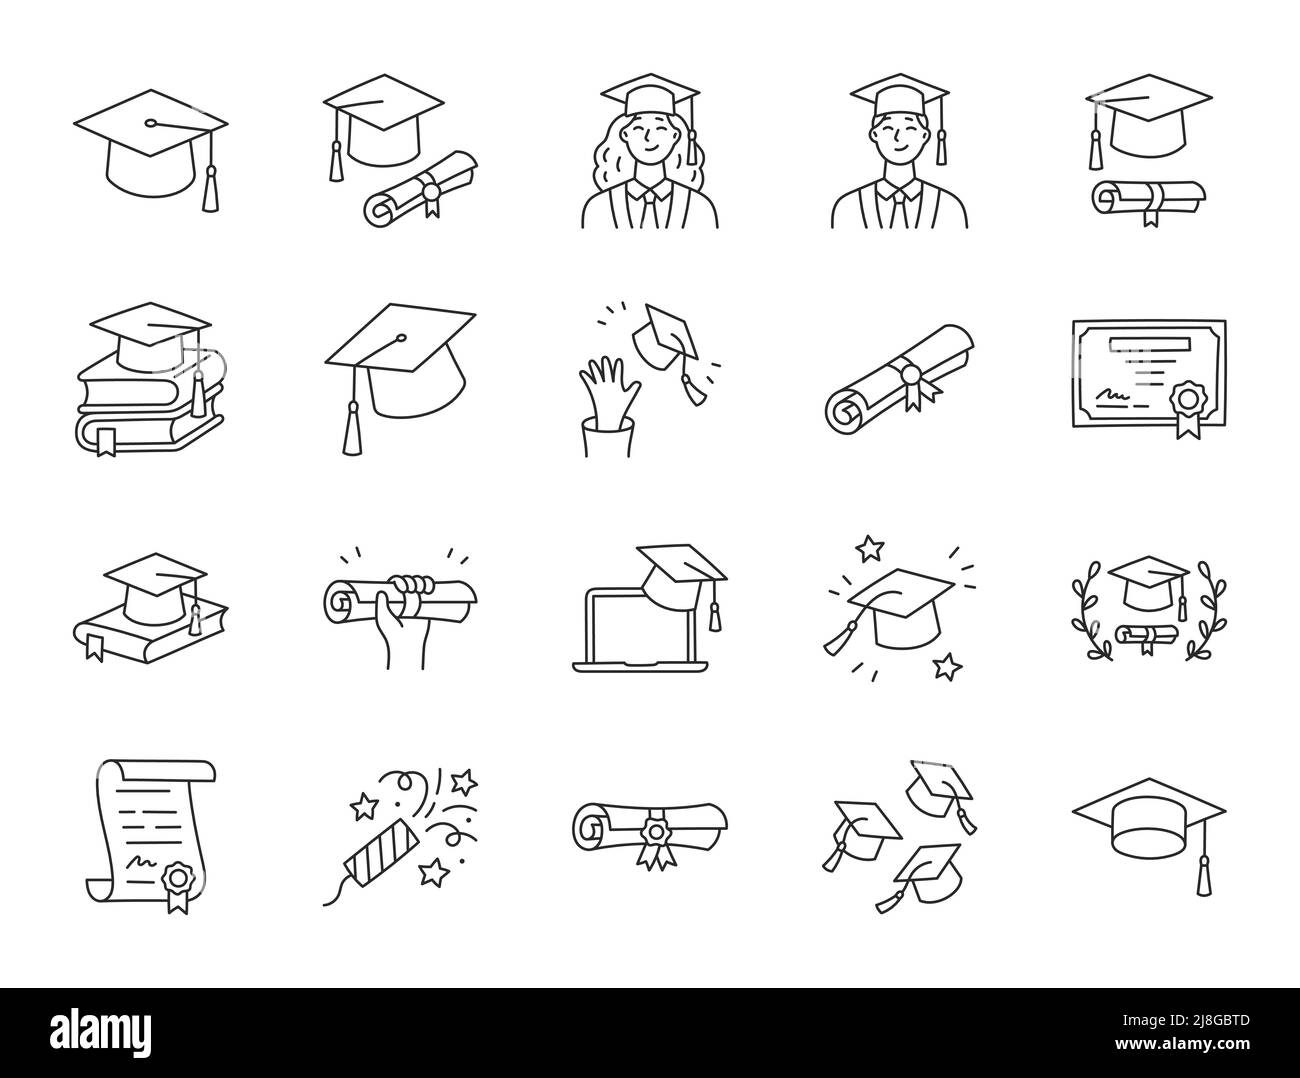 Illustrazione del doodle di laurea che include icone - studente in cappello, rotolo di certificato di diploma, grado universitario . Arte sottile circa la scuola superiore Illustrazione Vettoriale